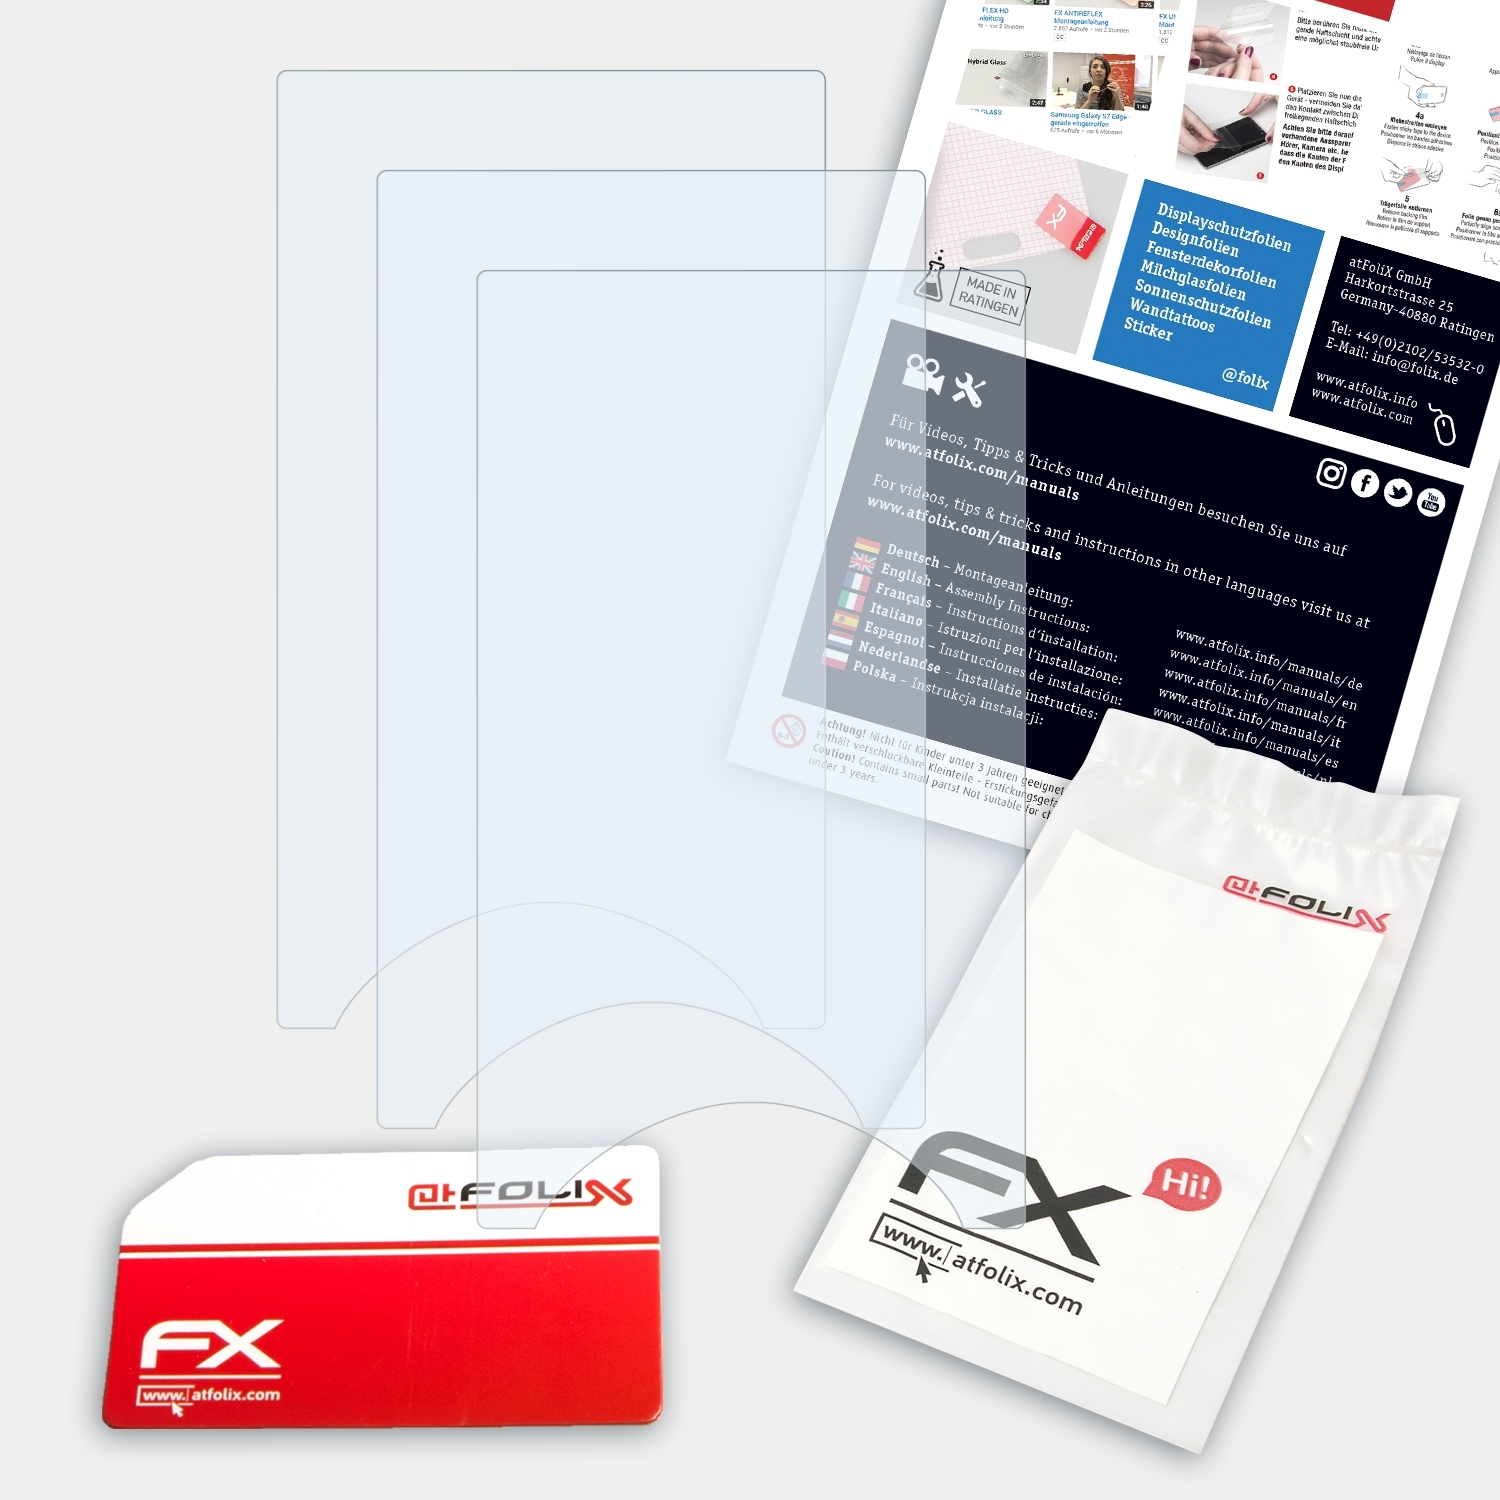 ATFOLIX 3x FX-Clear Displayschutz(für Walkman NWZ-A845) Sony